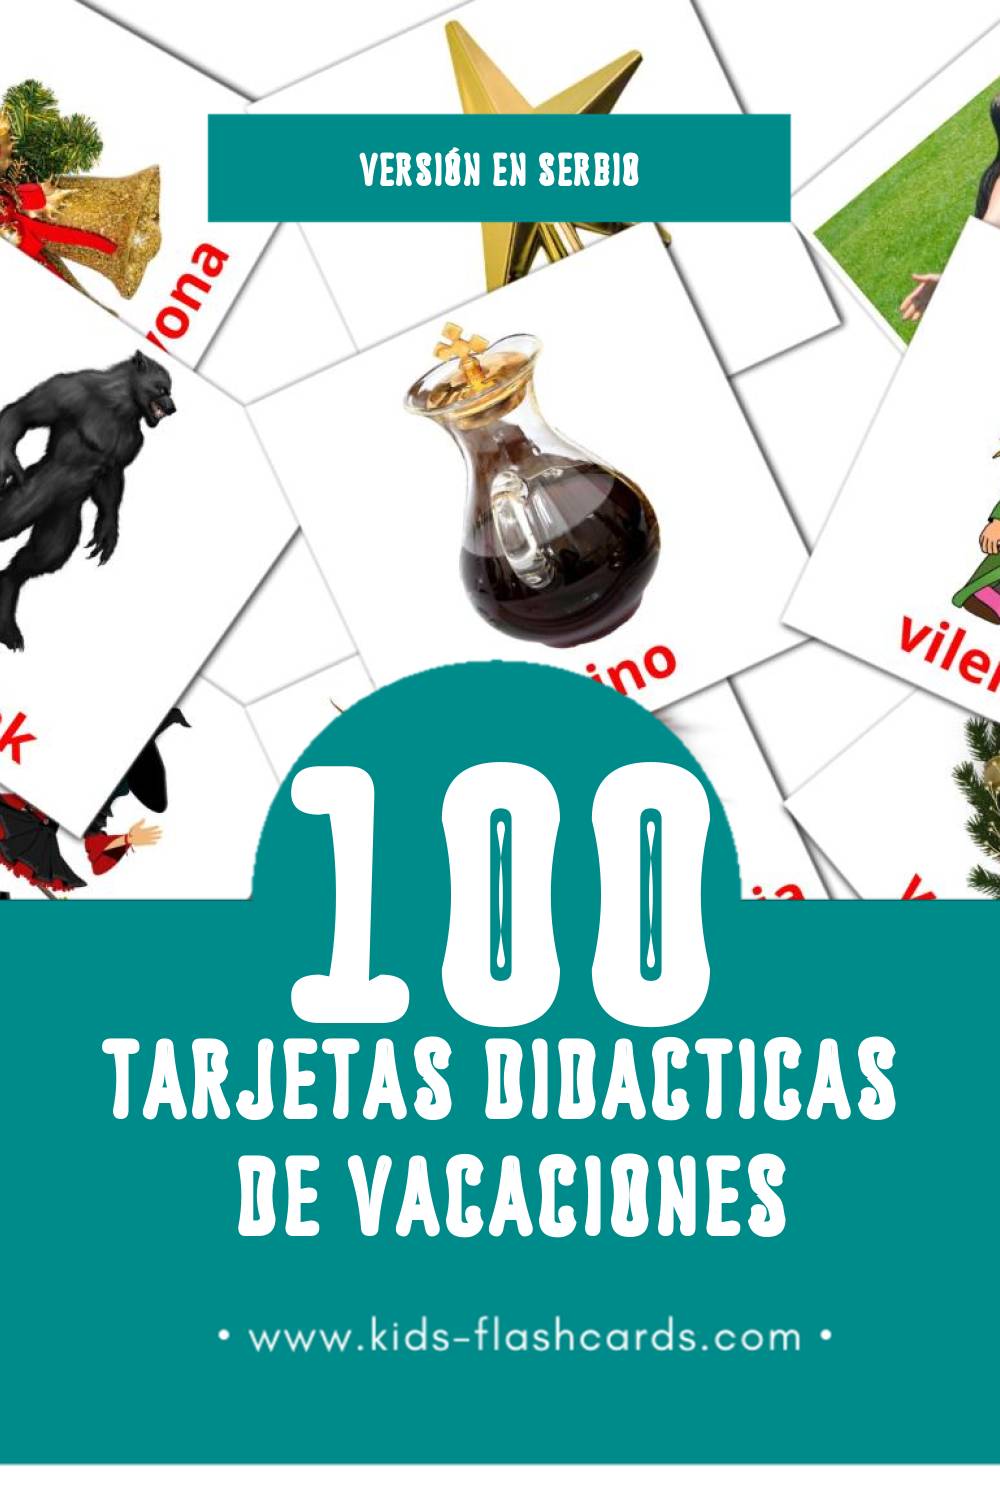 Tarjetas visuales de Praznici para niños pequeños (100 tarjetas en Serbio)